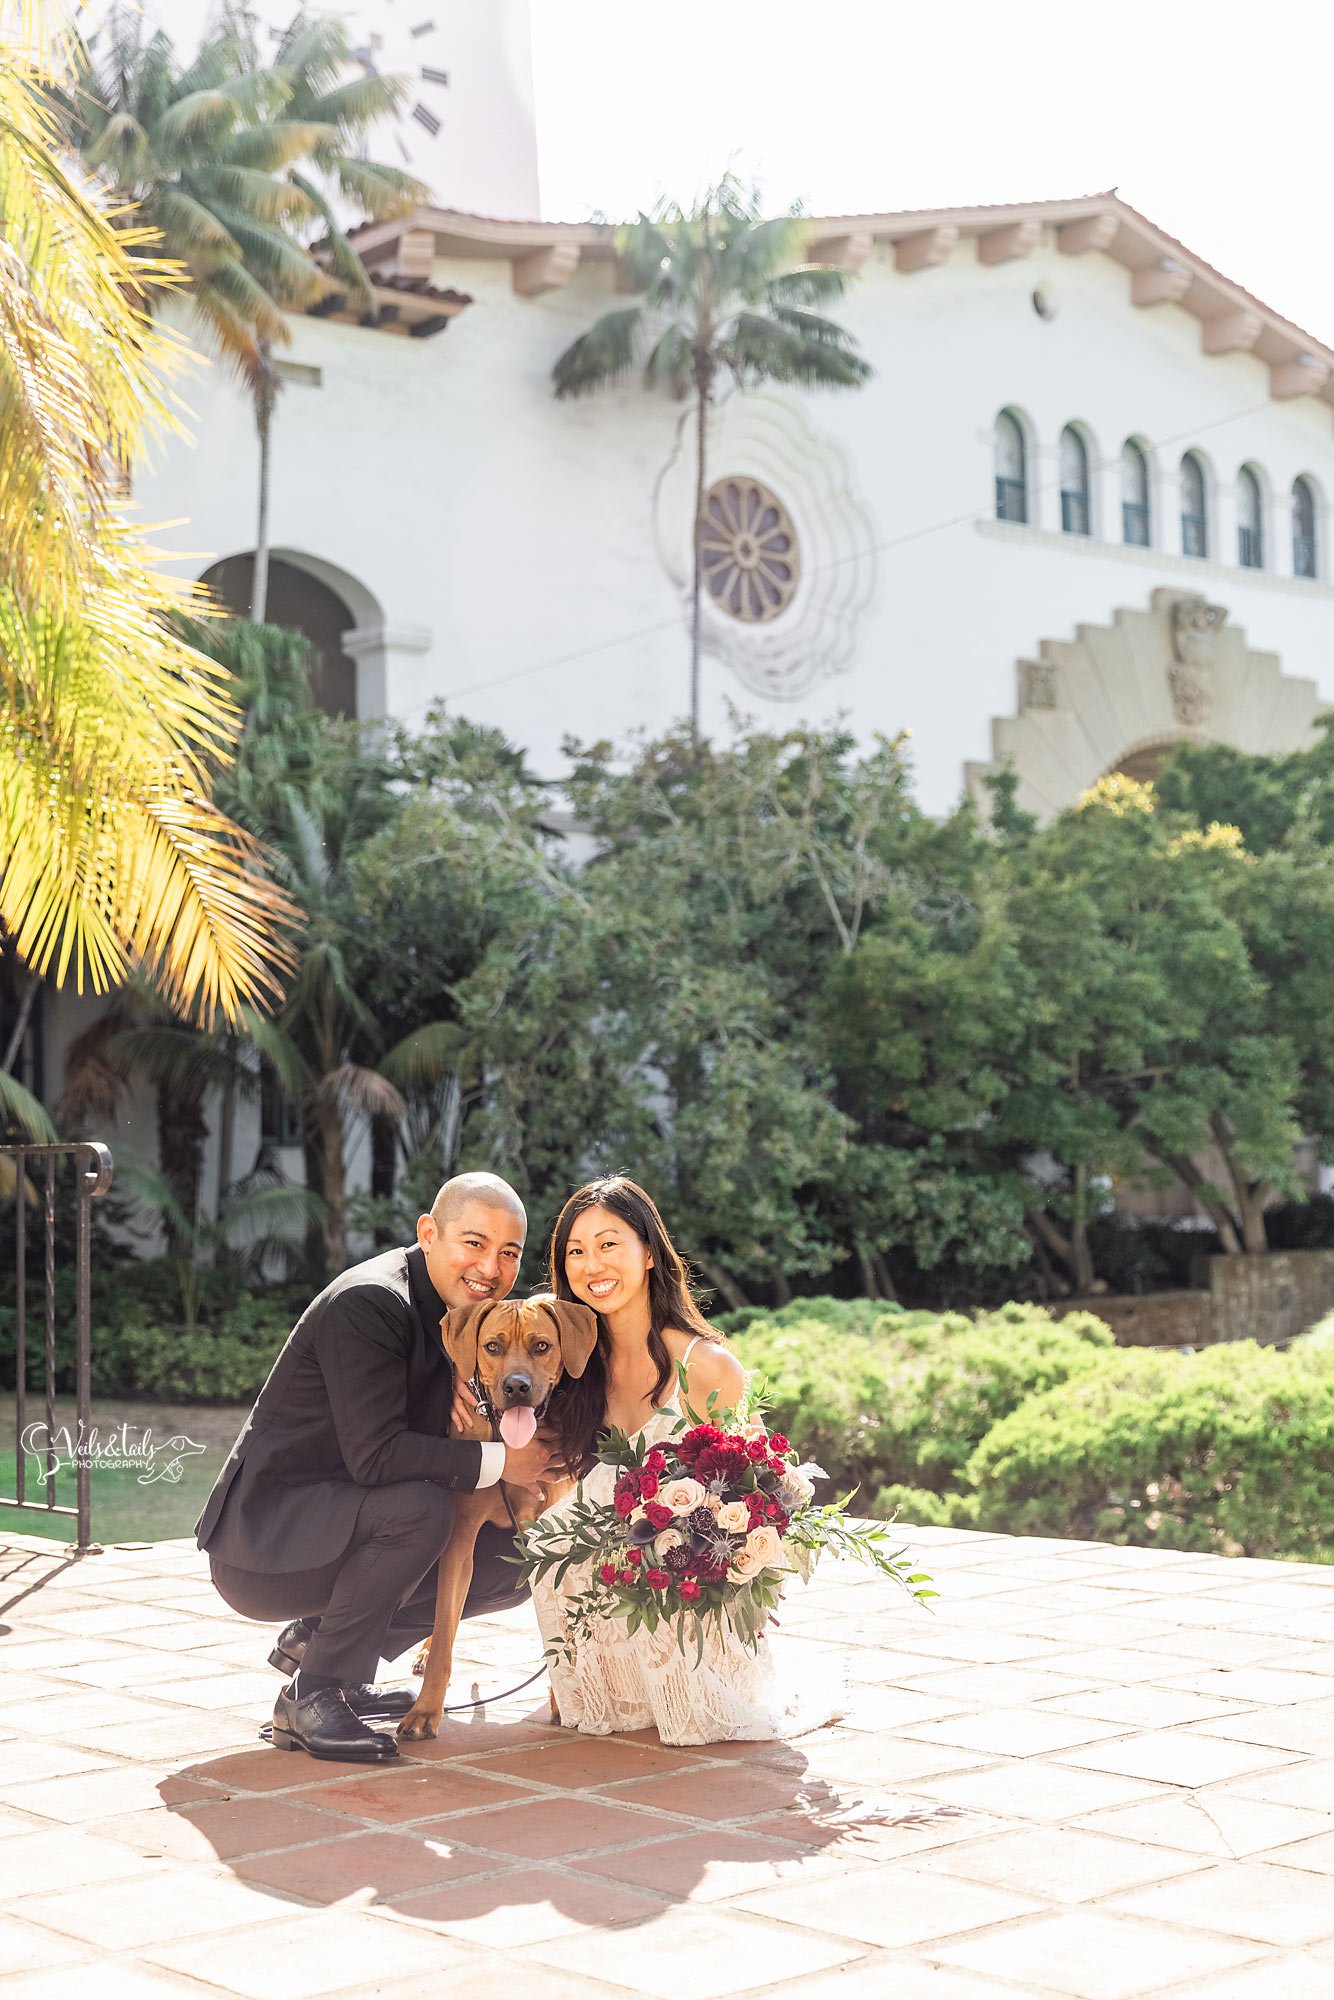 Santa Barbara Courthouse wedding photographer with ridgeback dog